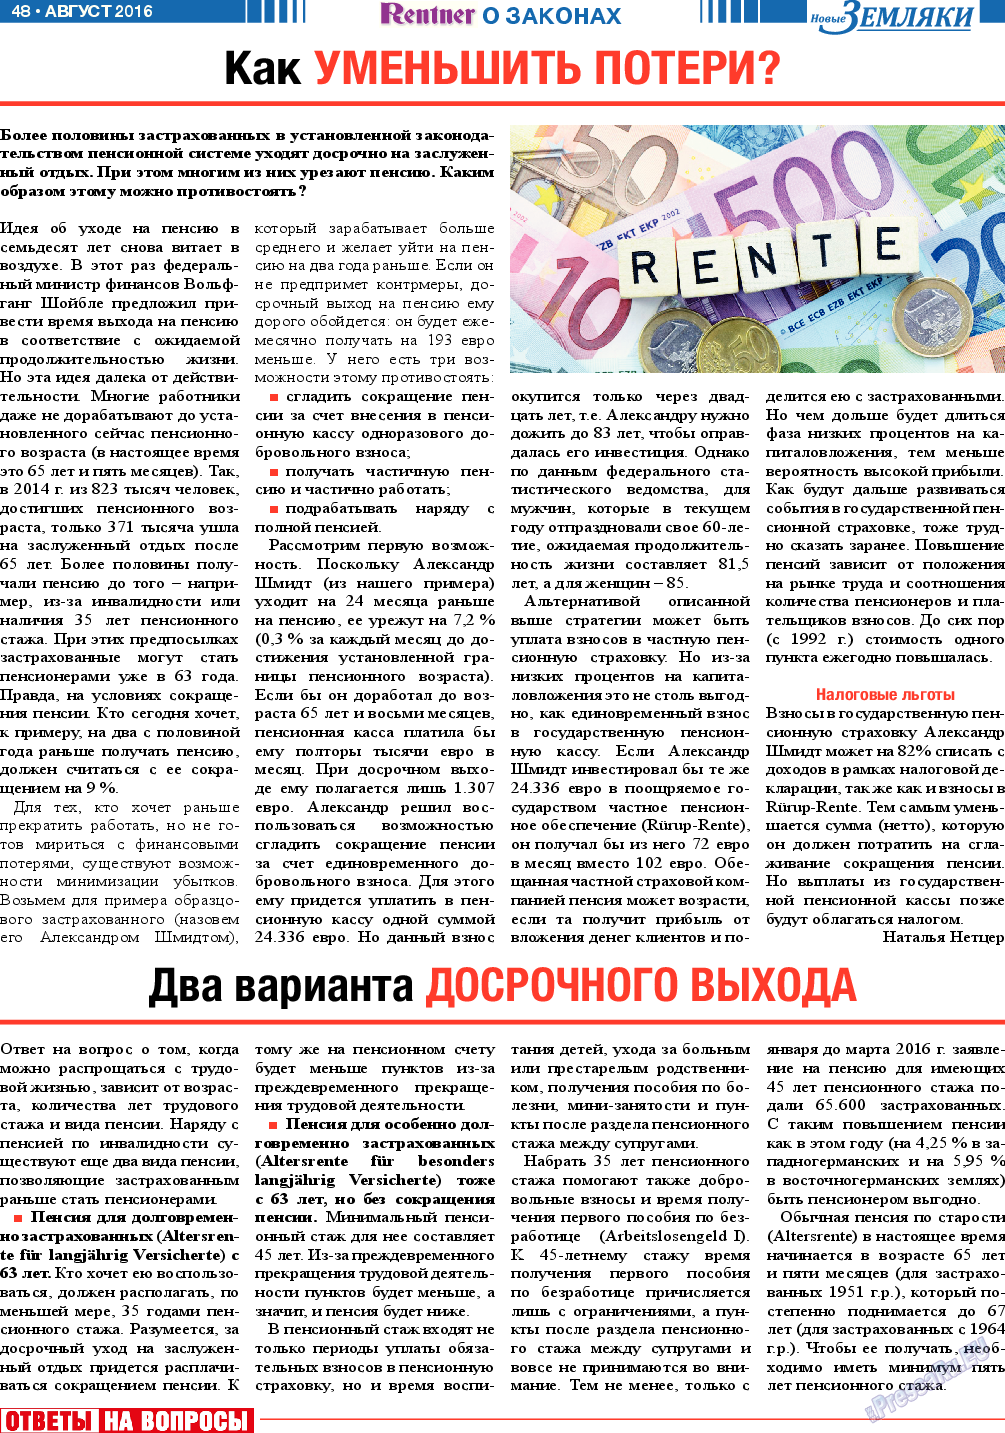 Новые Земляки, газета. 2016 №8 стр.48